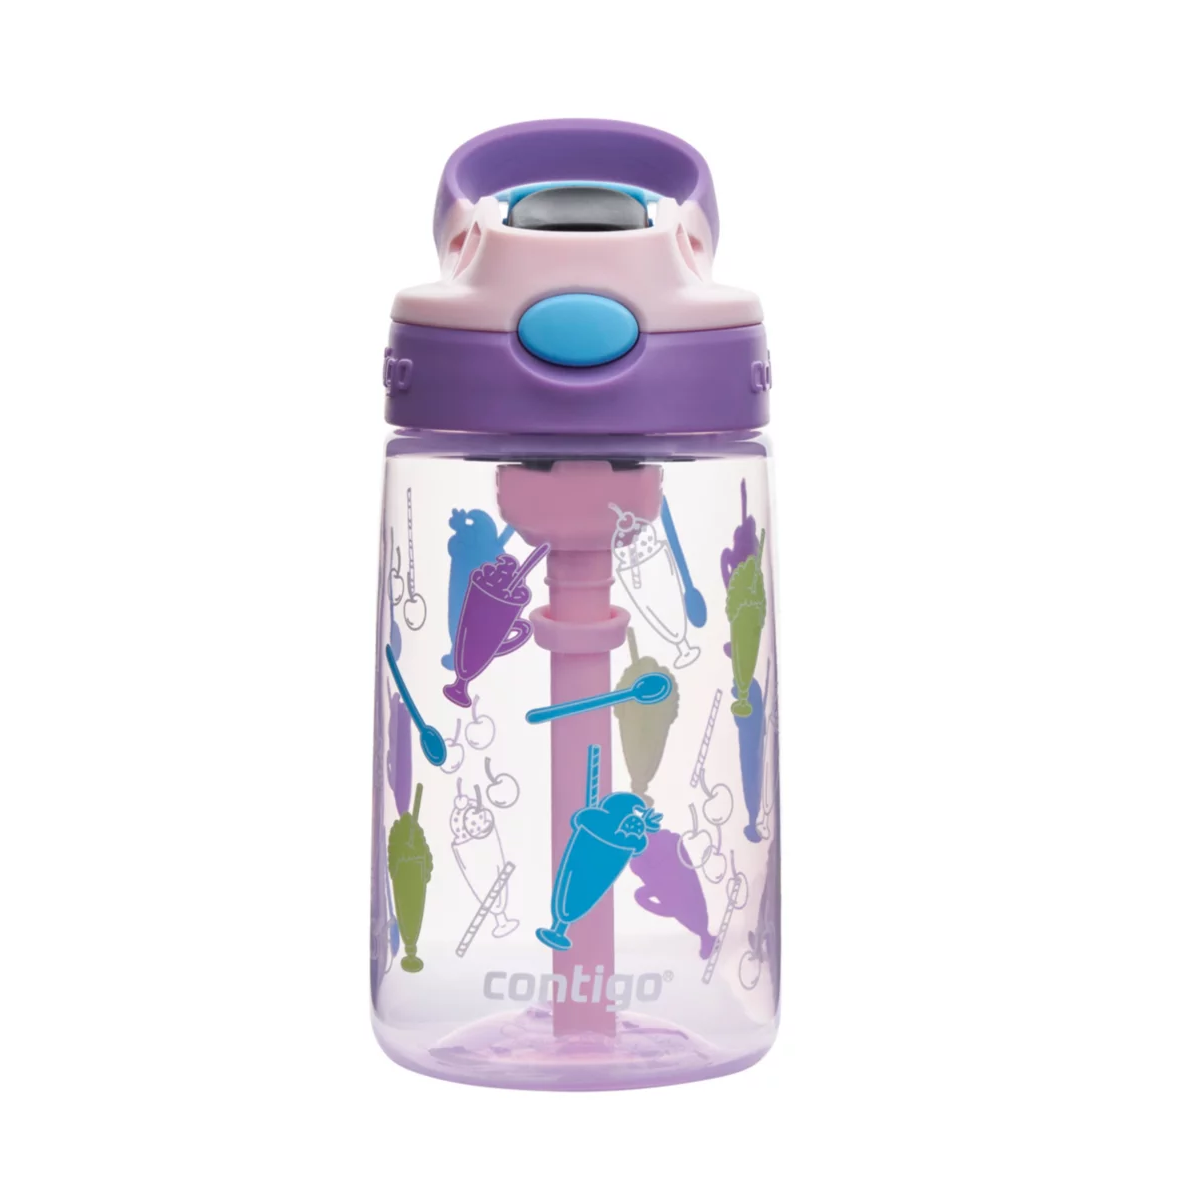 Contigo - Contigo, Kids - Water Bottle, Spill-Proof, Autospout